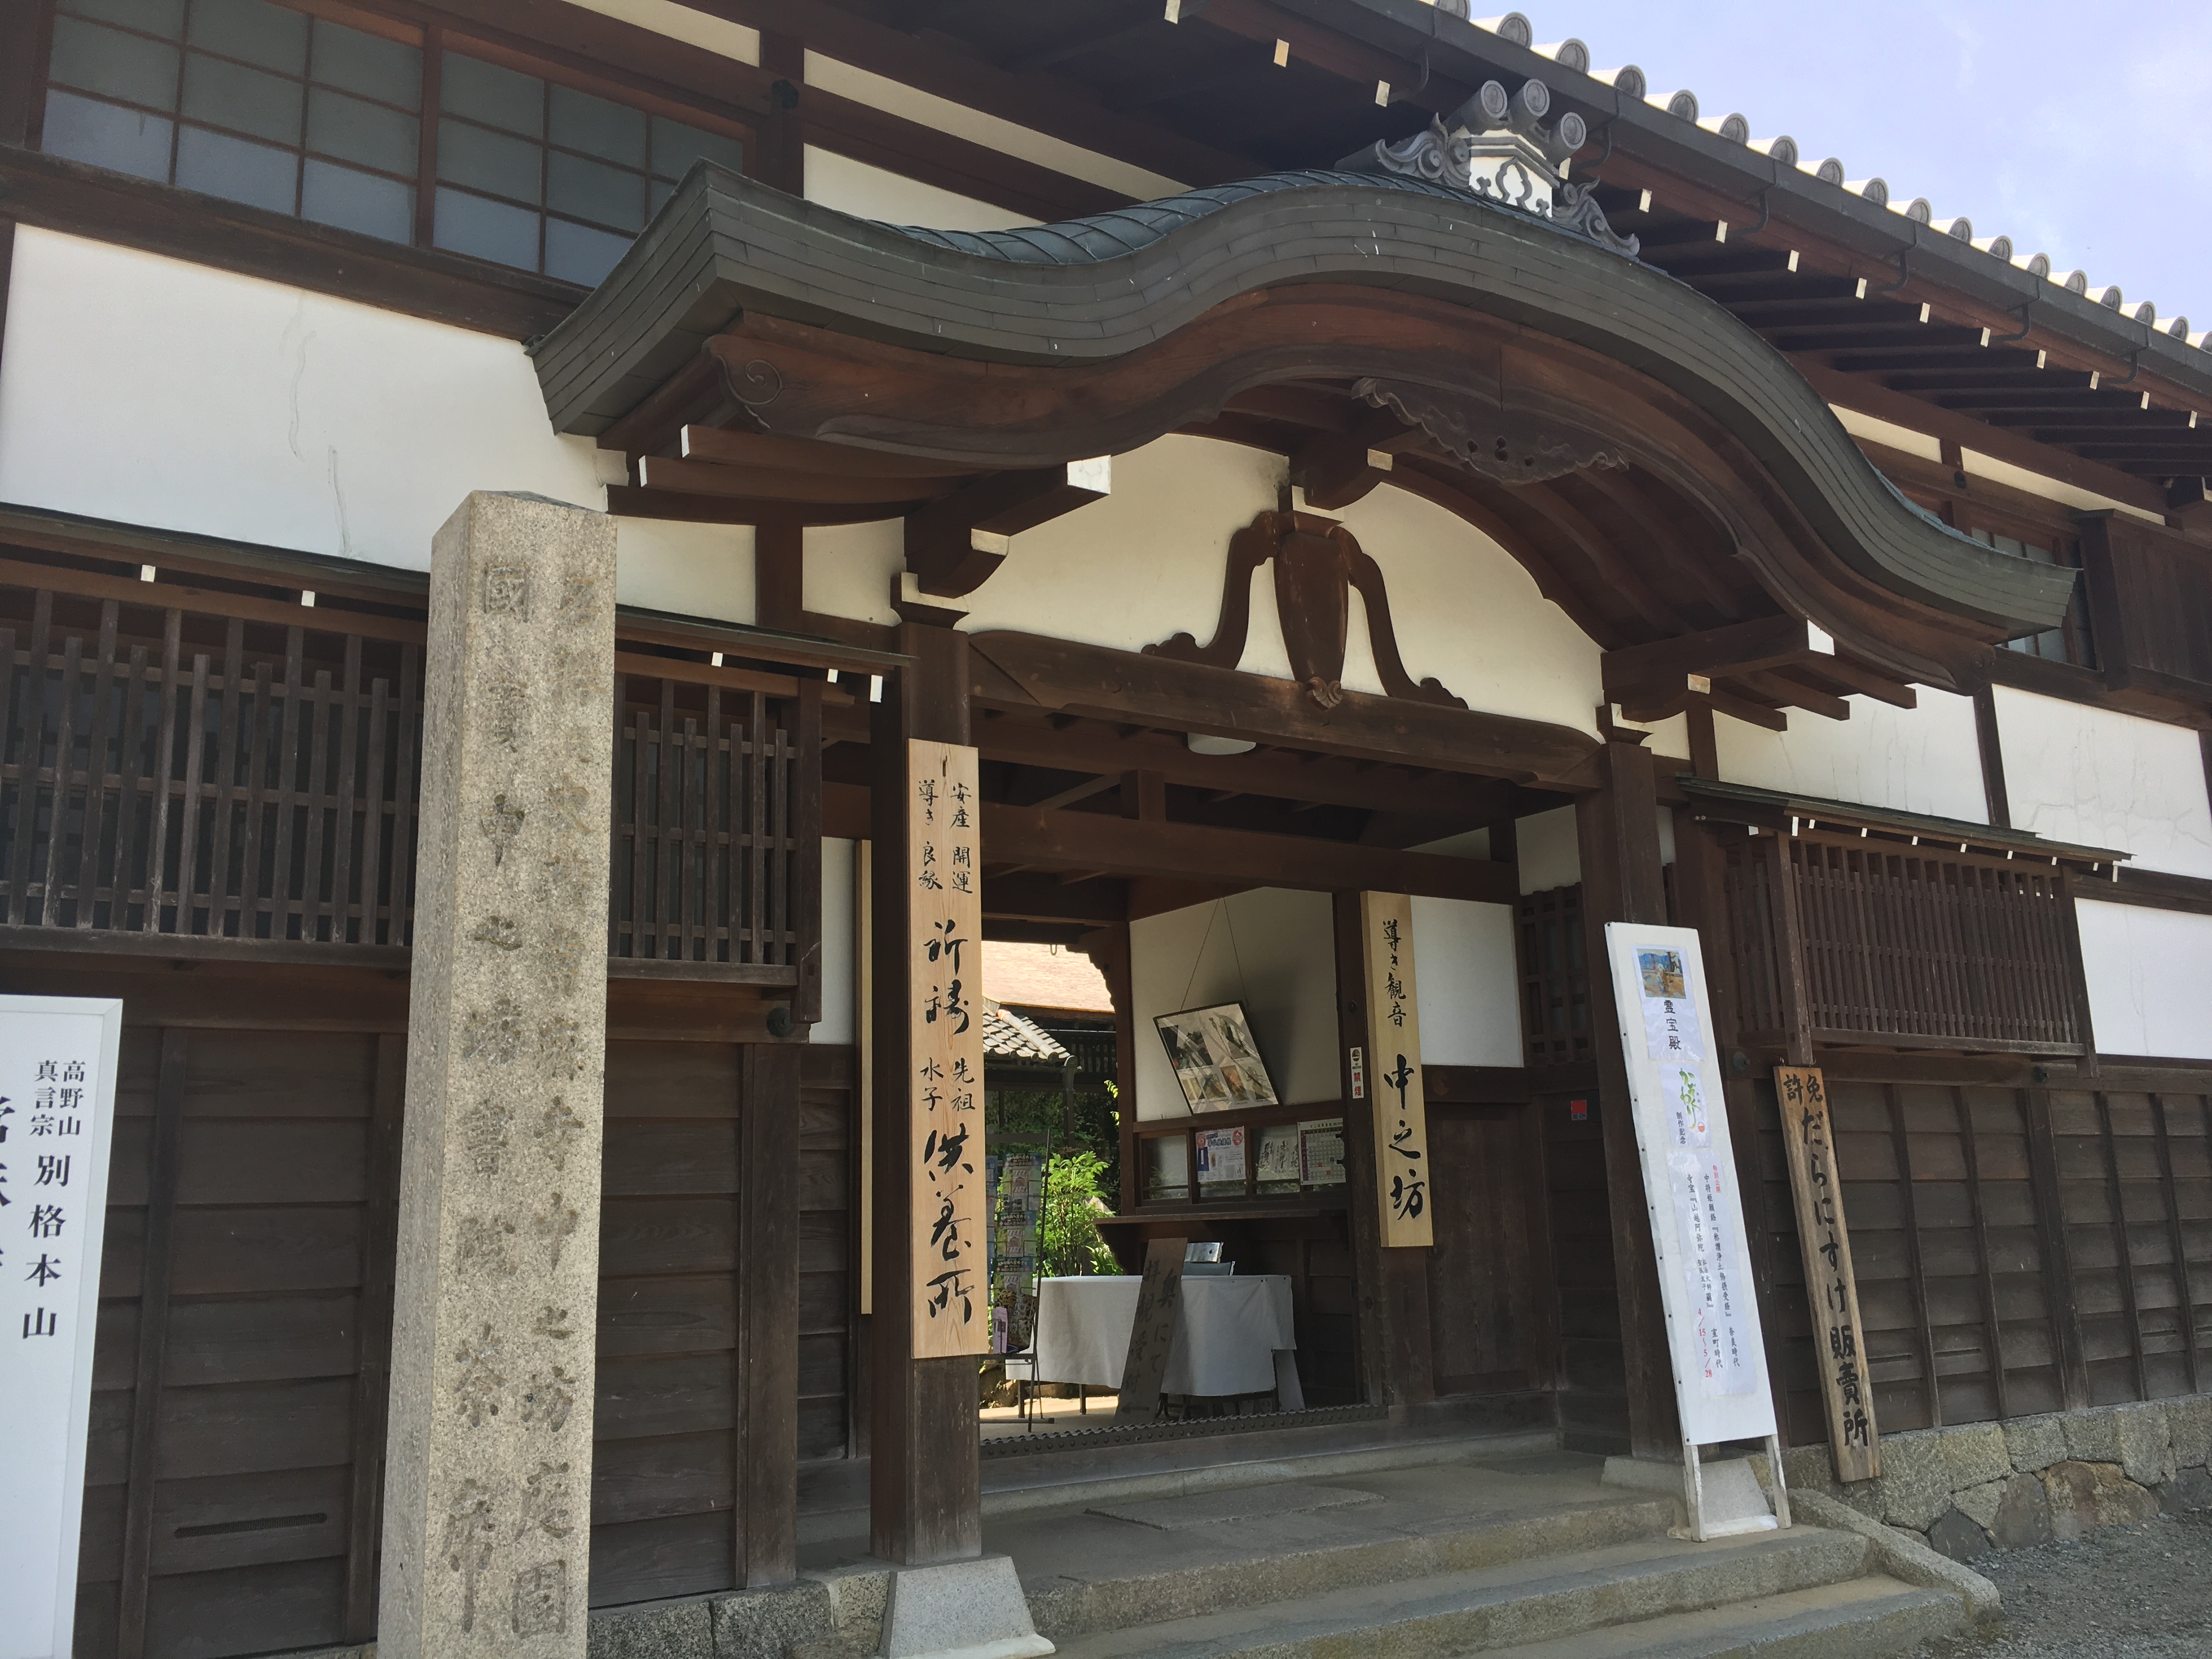 entrance of the nakano-bo at Taima-dera